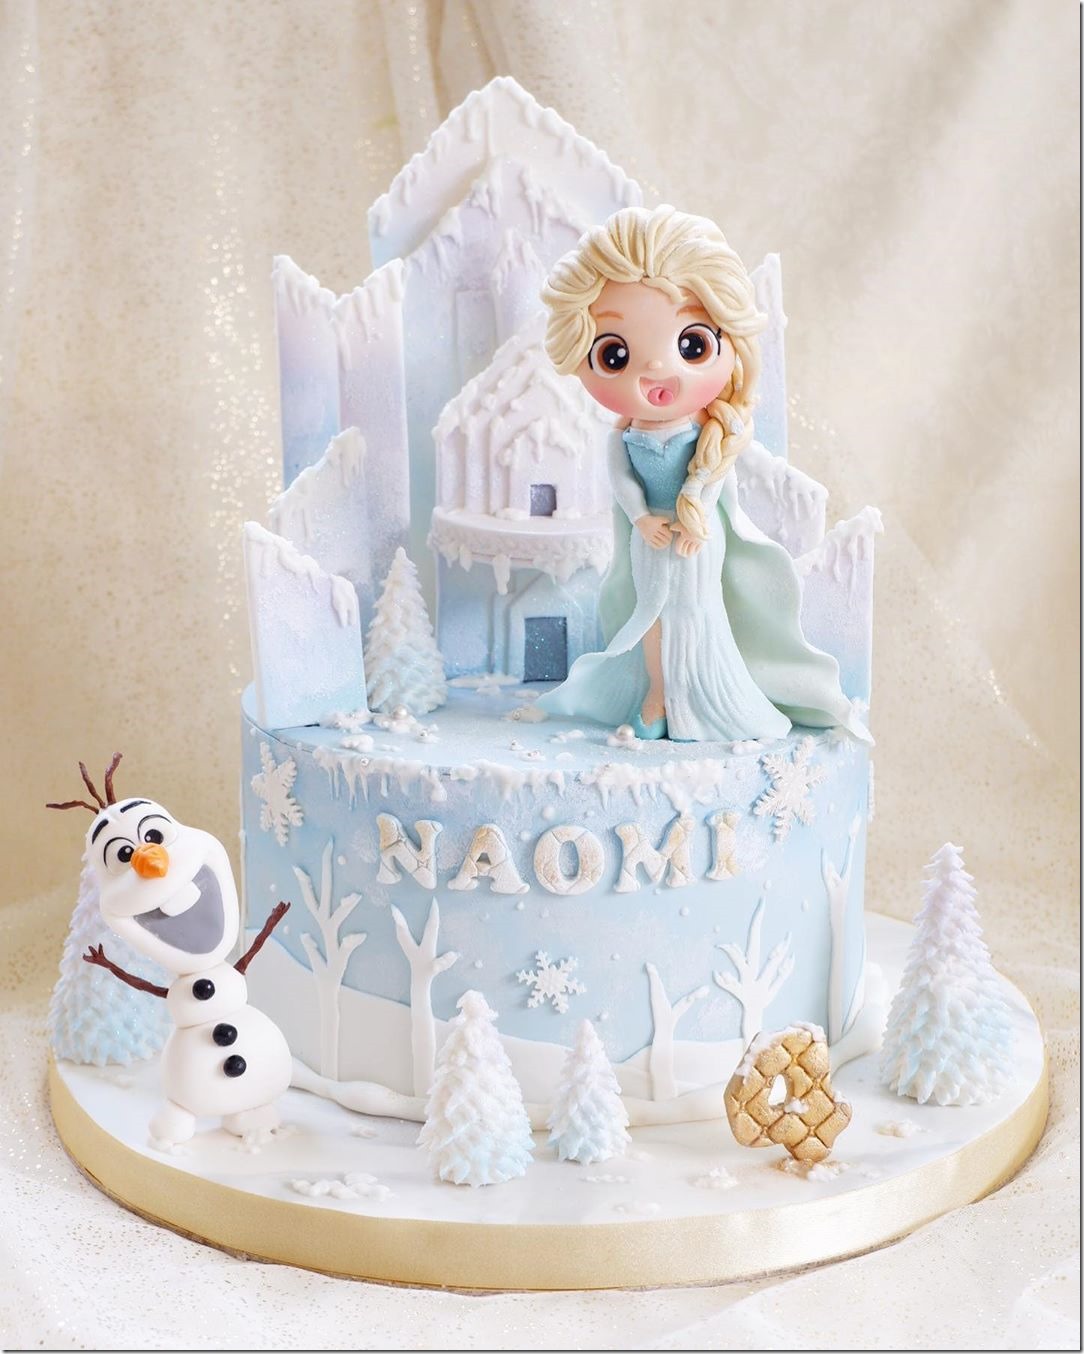 Elsa & Olaf 4th Birthday Cake